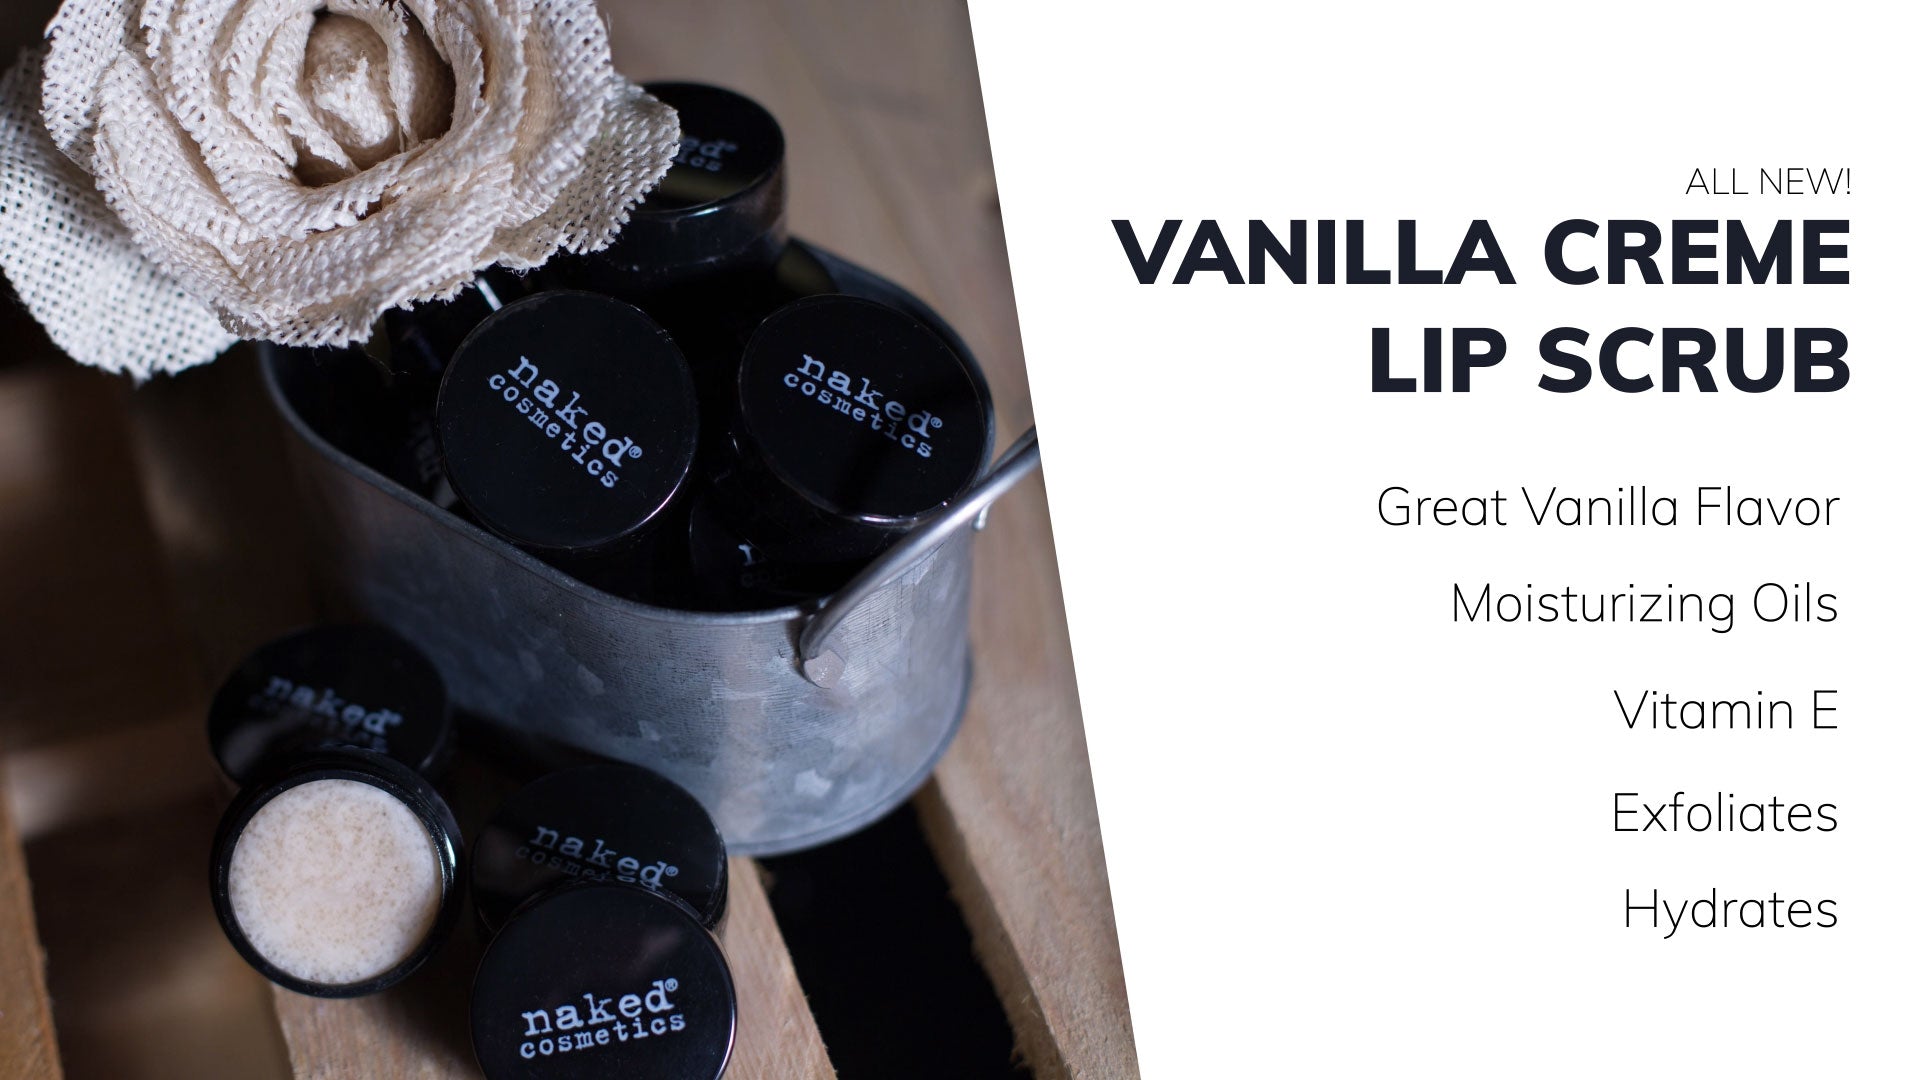 Naked Cosemetics Vanilla Creme Lip Scrub, moisturizing Oil, Vitamin E, Exfoliates, Hydrates